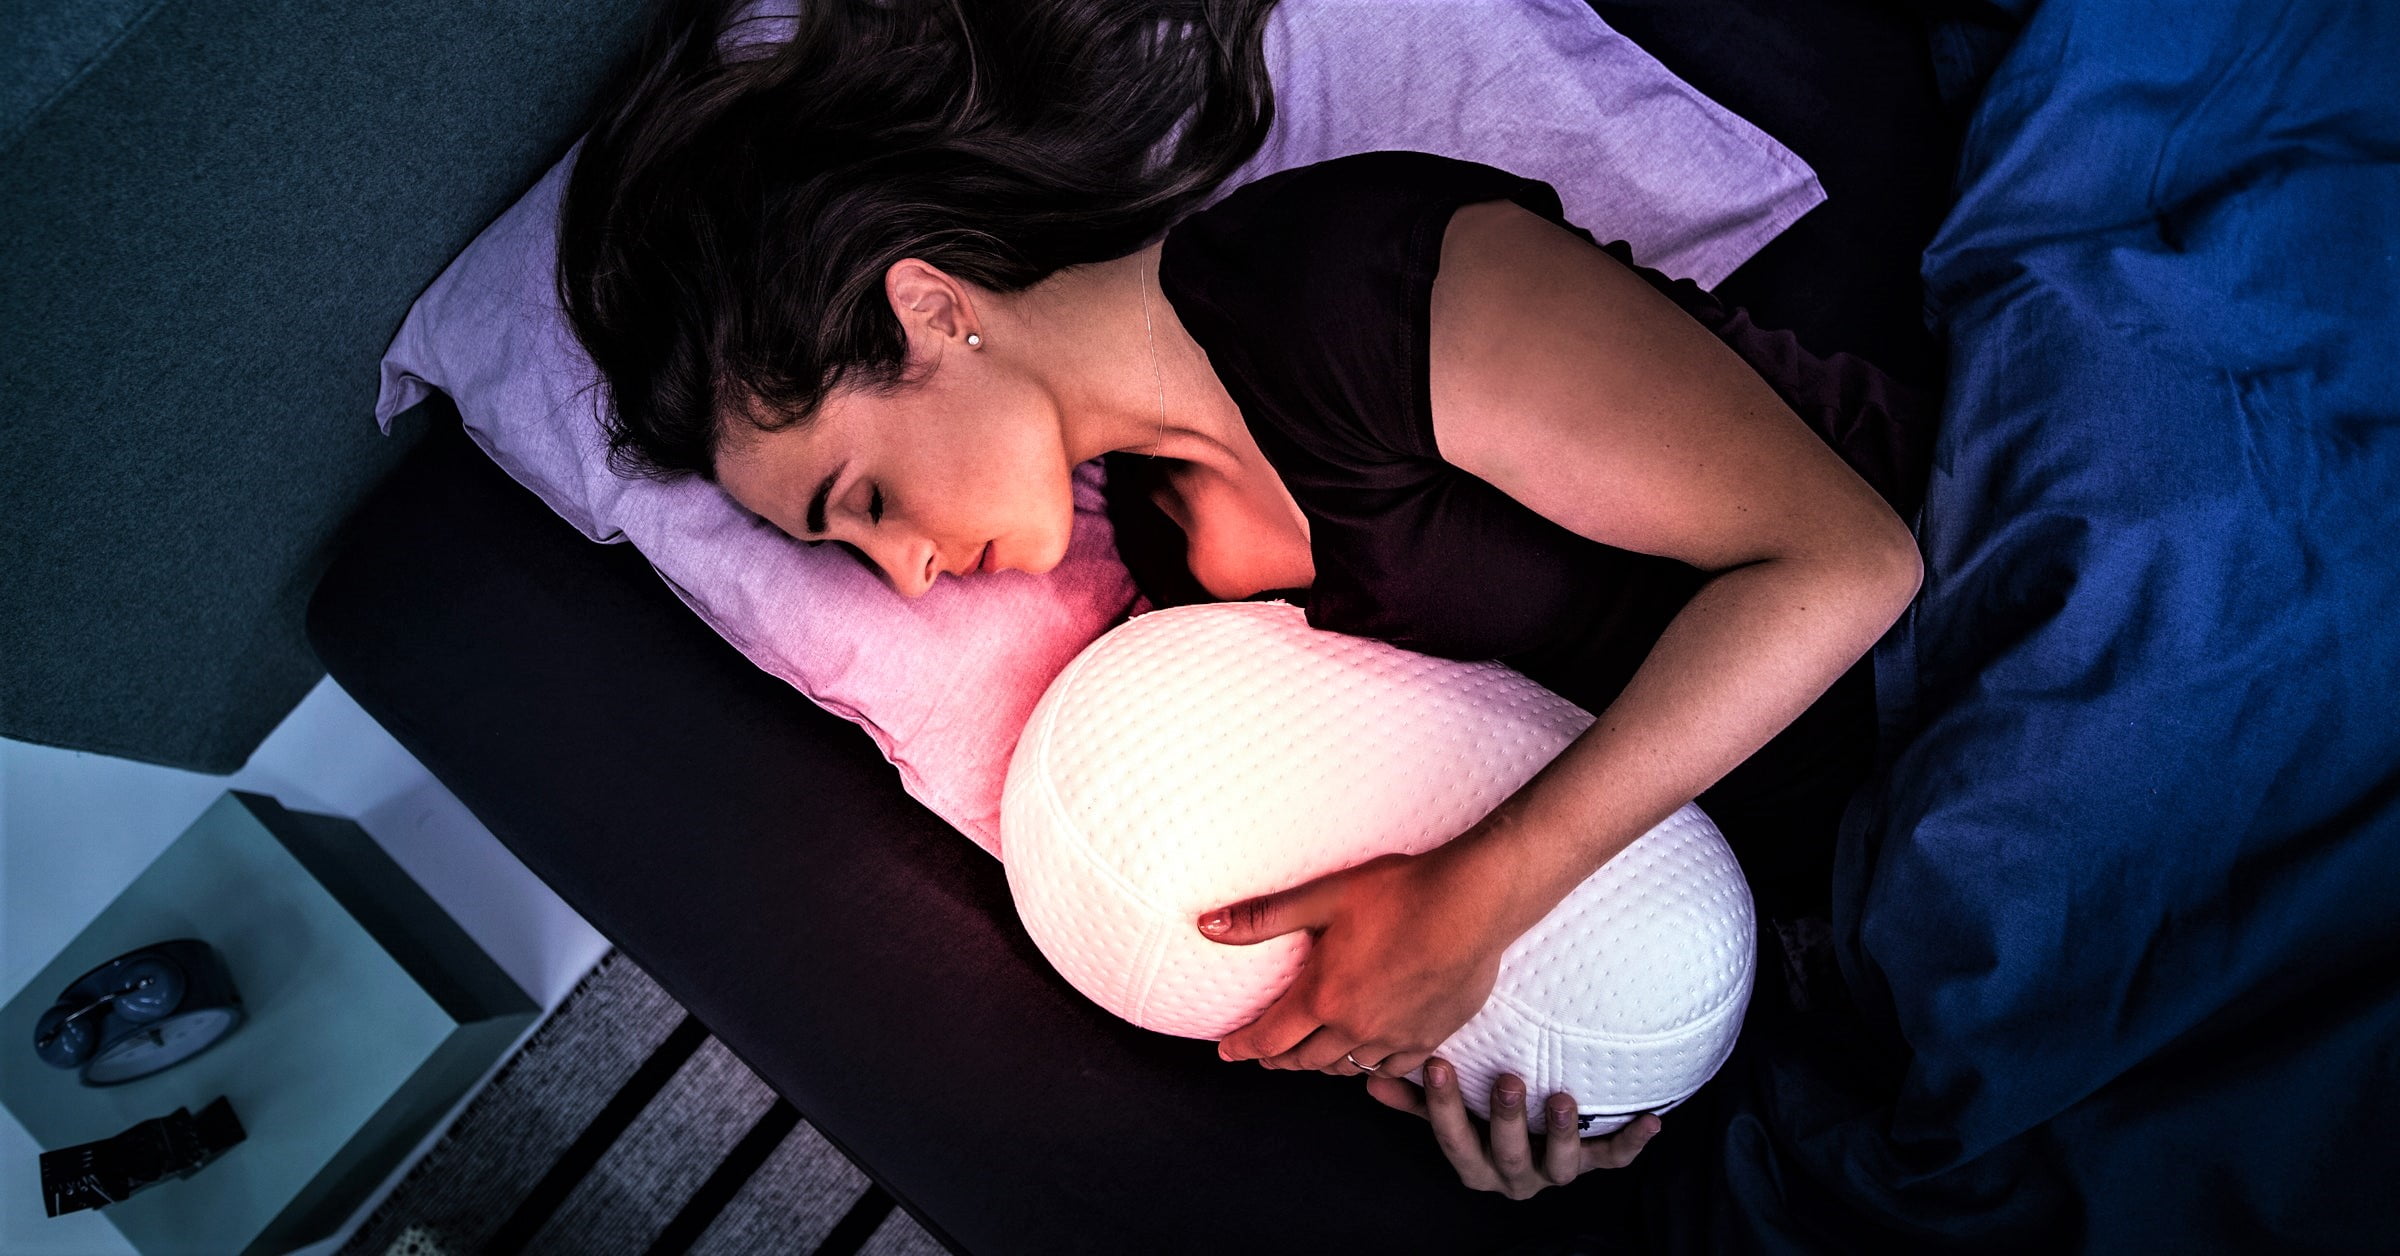 شركة somnox تعلن عن روبوت ذكي يخلصك من اضطرابات النوم